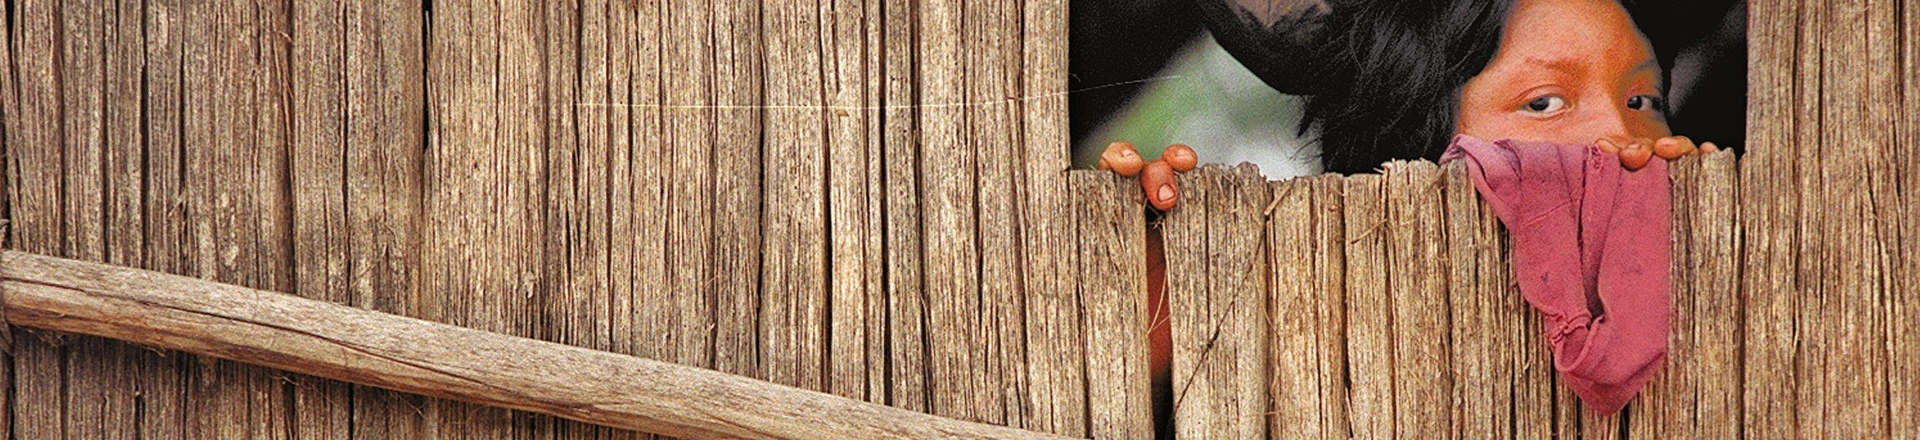 Expedição da Funai: índia djapá observa da janela de sua maloca homens brancos chegando na sua aldeia, no Vale do Javari, no Amazonas. (Vale do Javari, Amazonas, 09.05.2001 - Foto de Flávio Florido/Folhapress/Negativo 05635.01)